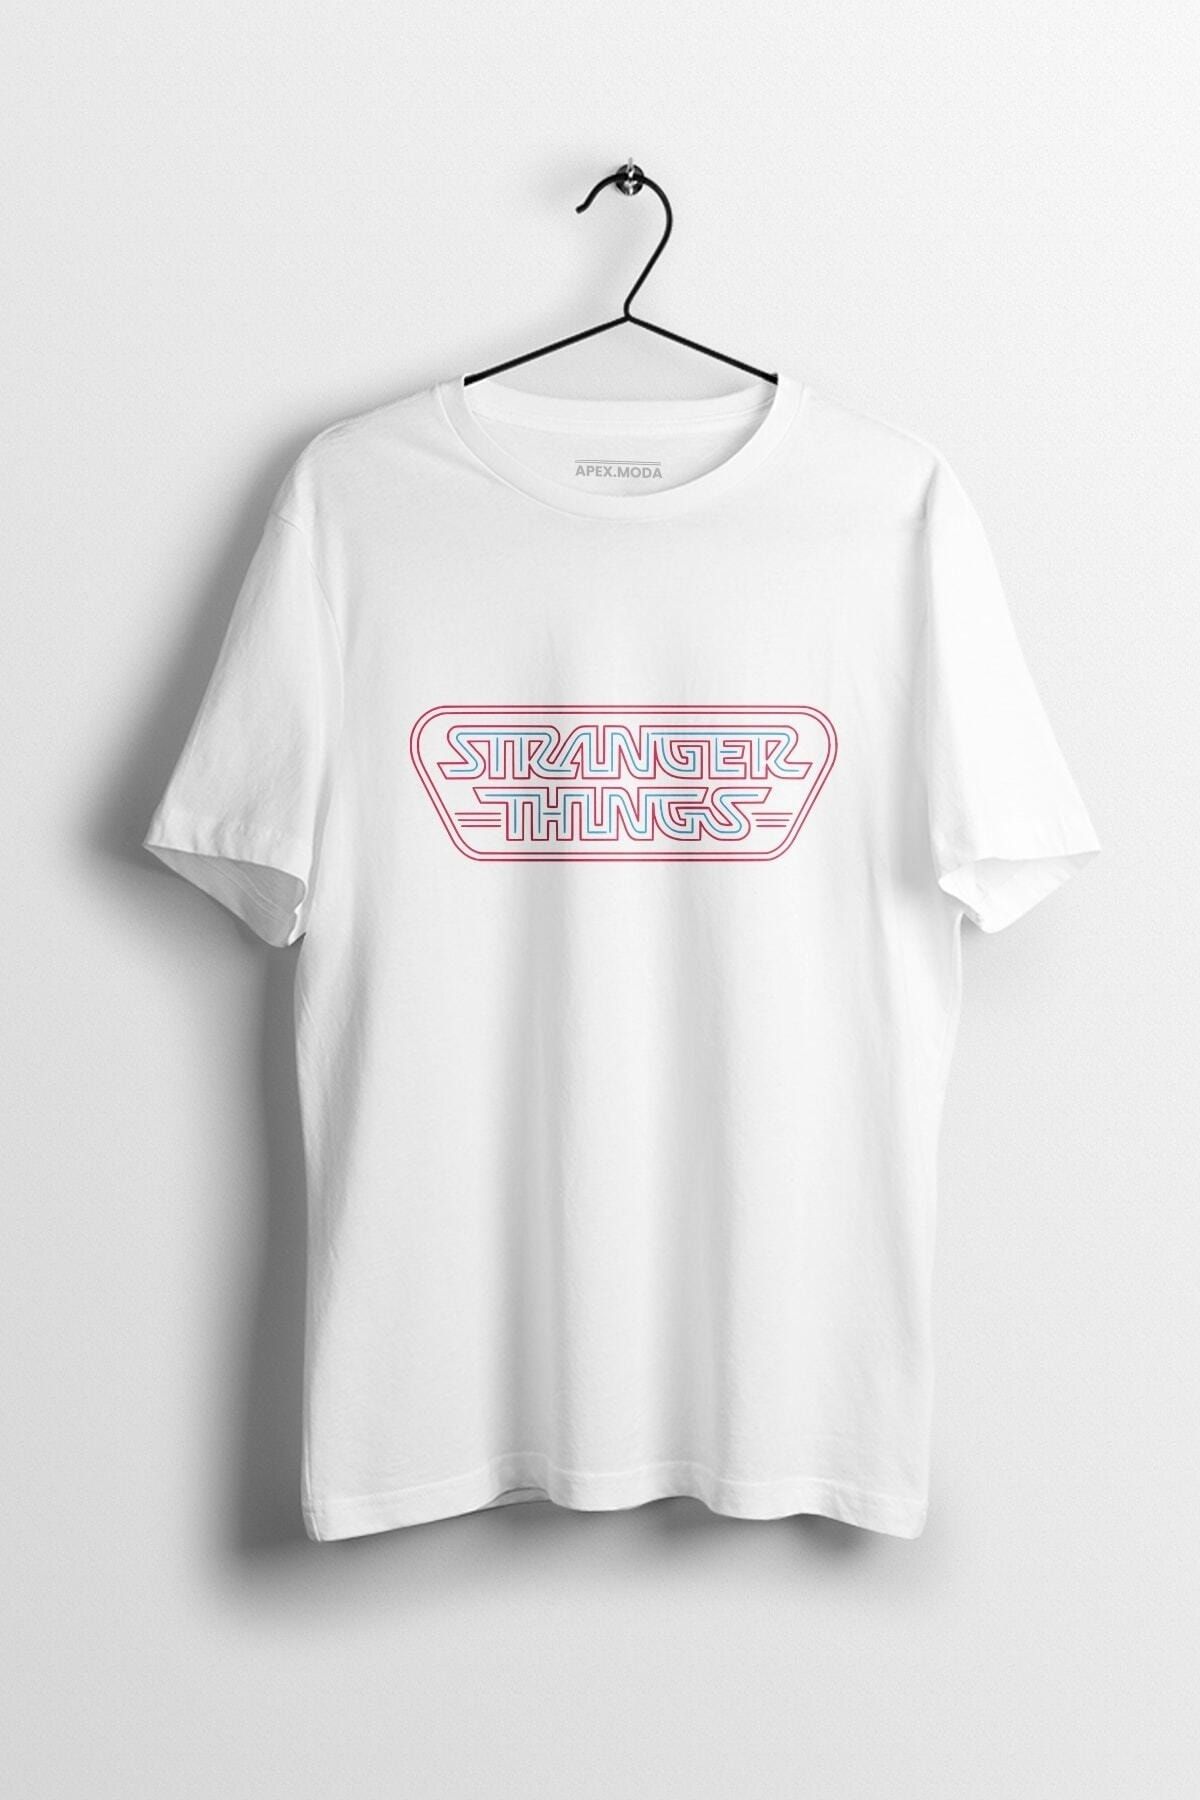 WePOD Stranger Things Art Baskılı Tişört Baskılı Beyaz Kısa Kollu Unisex Tişört